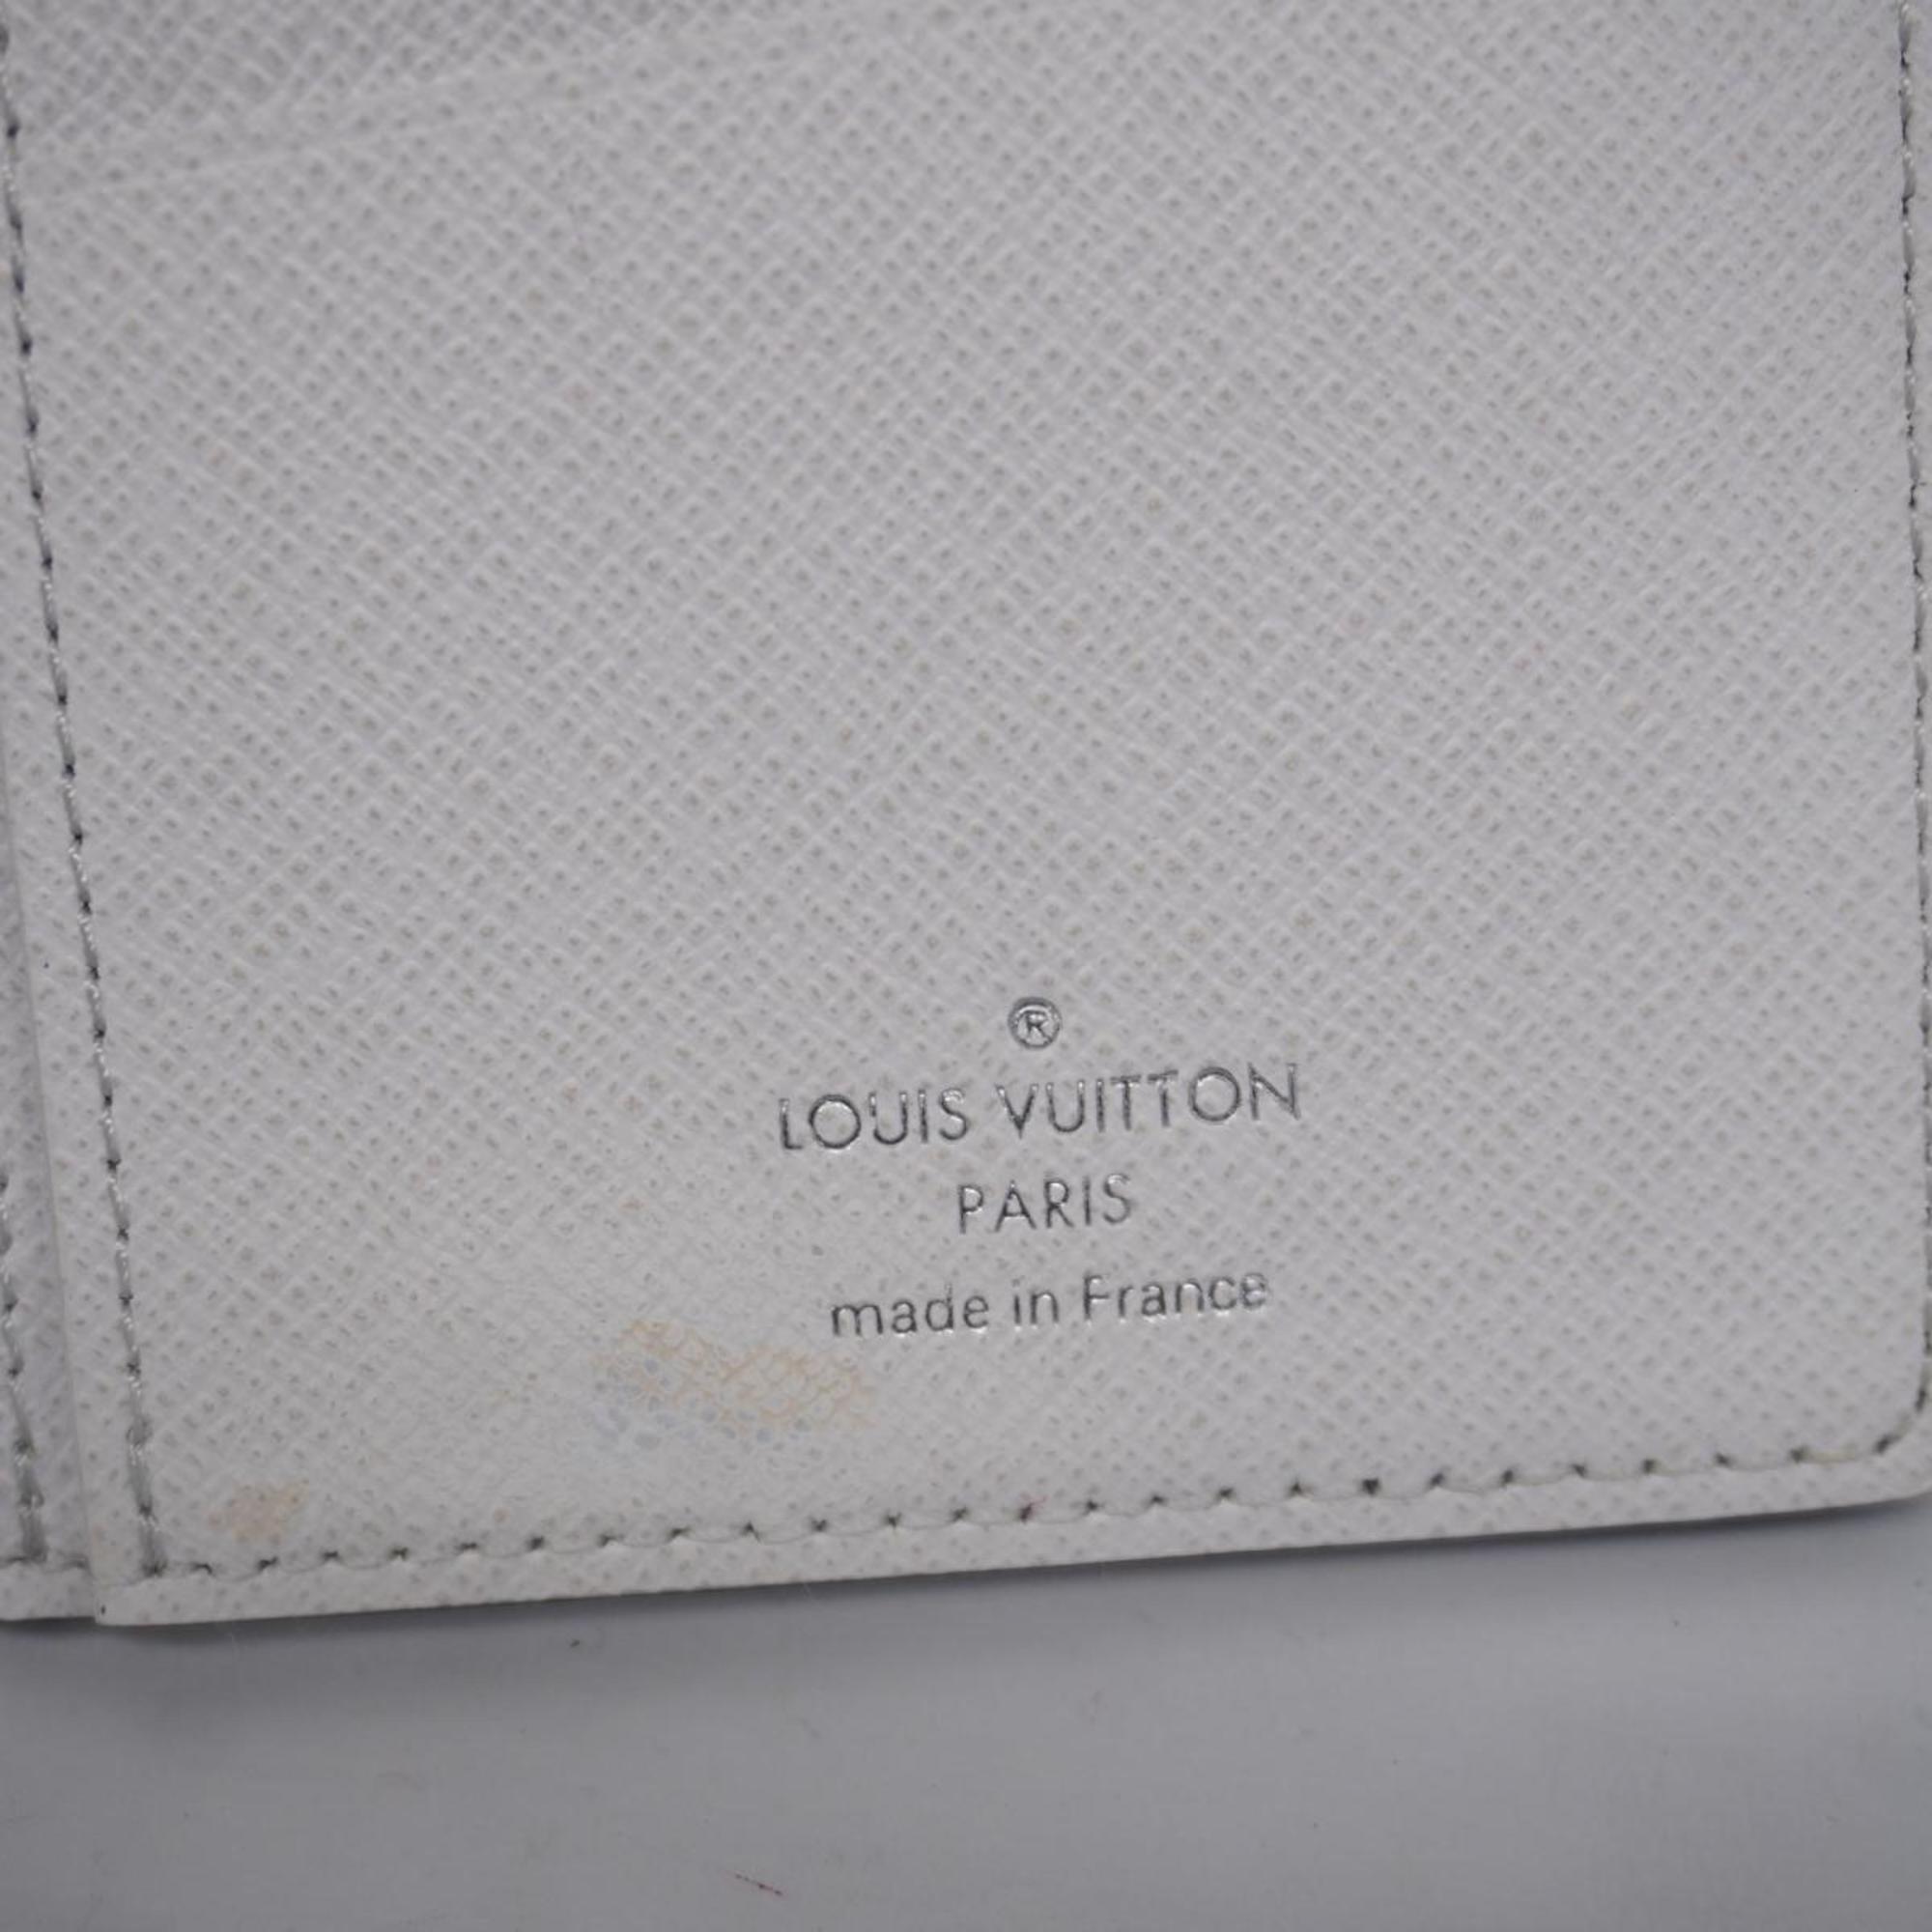 ルイ・ヴィトン(Louis Vuitton) ルイ・ヴィトン 長財布 タイガラマ ポルトフォイユブラザNM M30889 ブロンメンズ